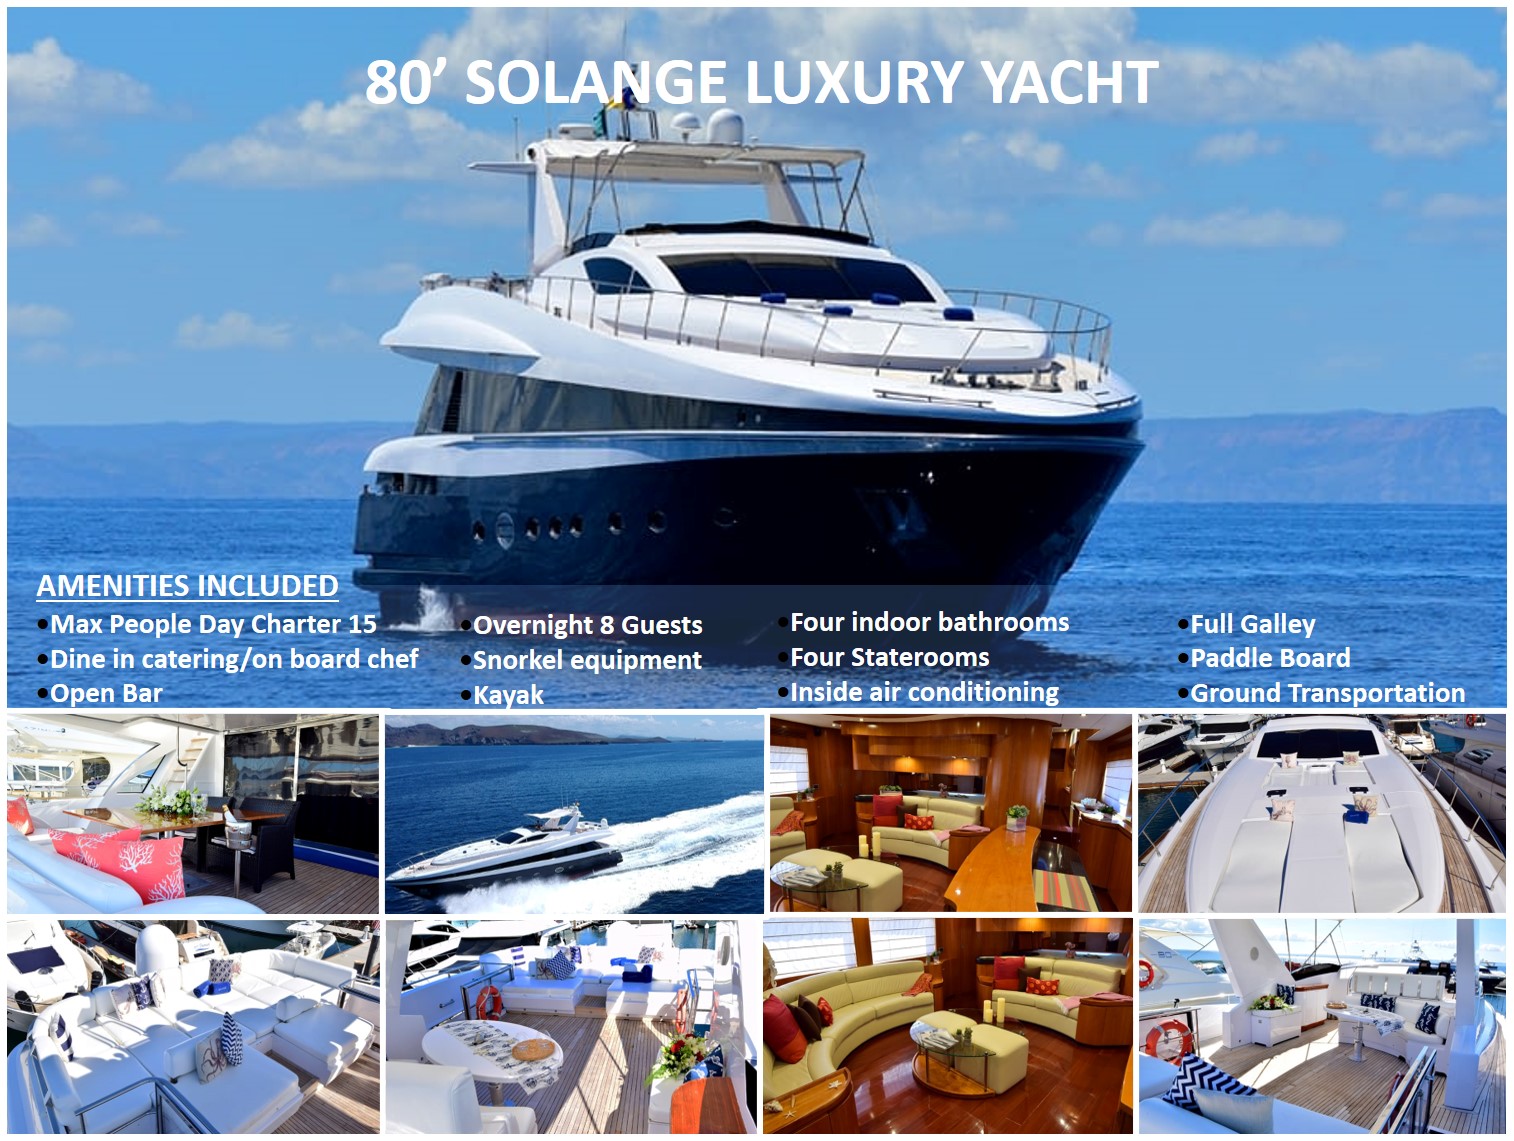 80-solange-luxury-yacht